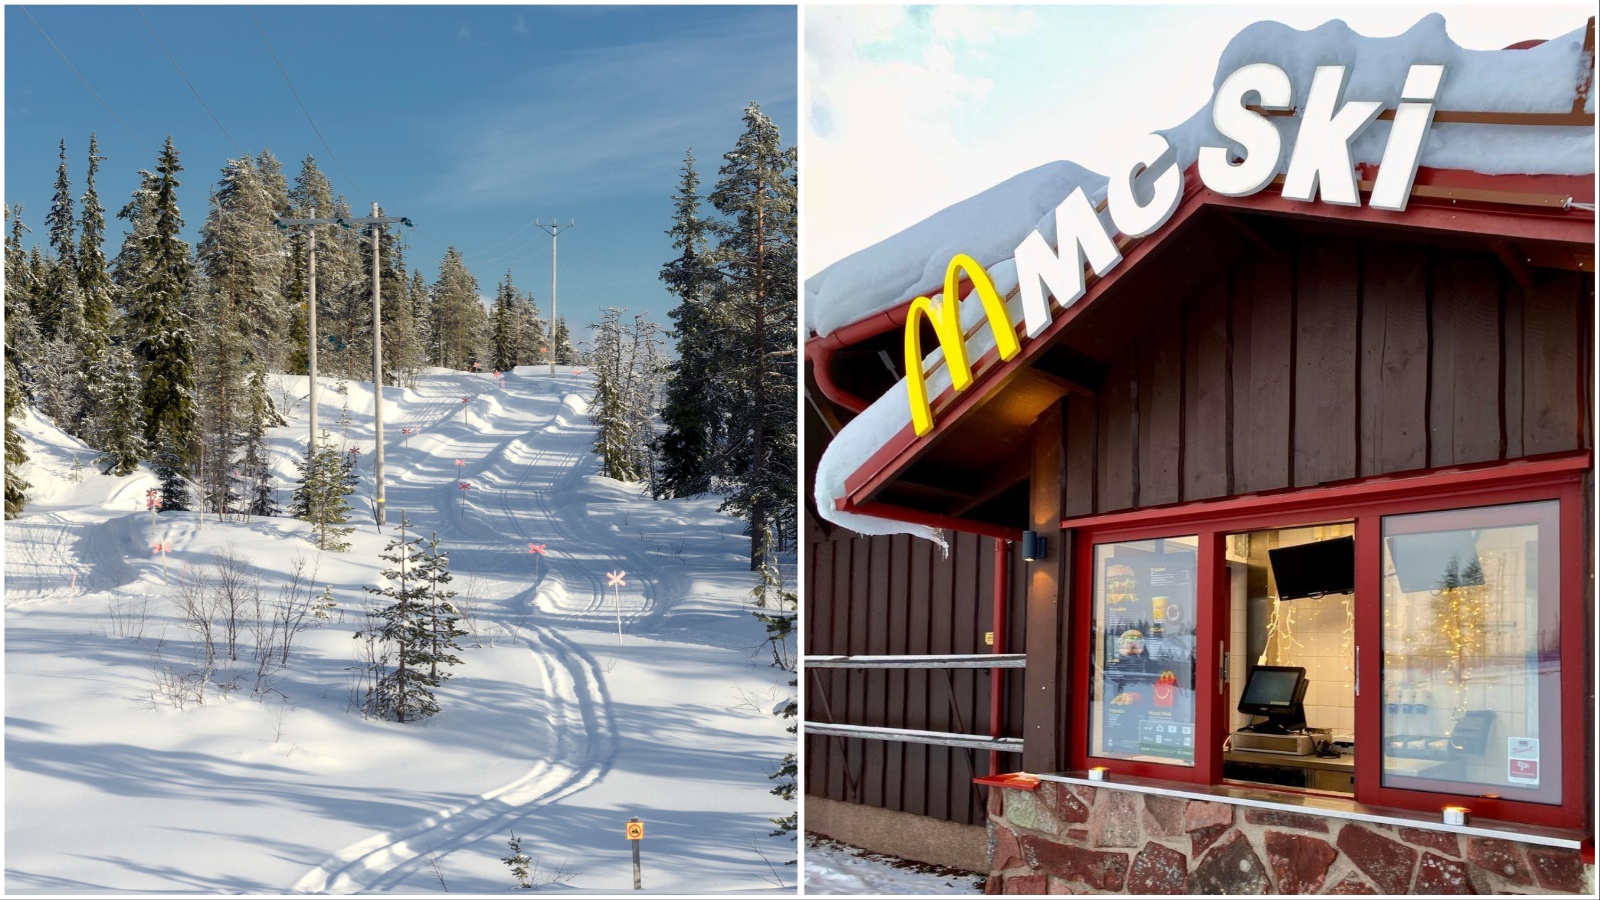 Nije li ovo najcool McDonald’s na svijetu? McSki koliba nalazi se na skijaškoj stazi